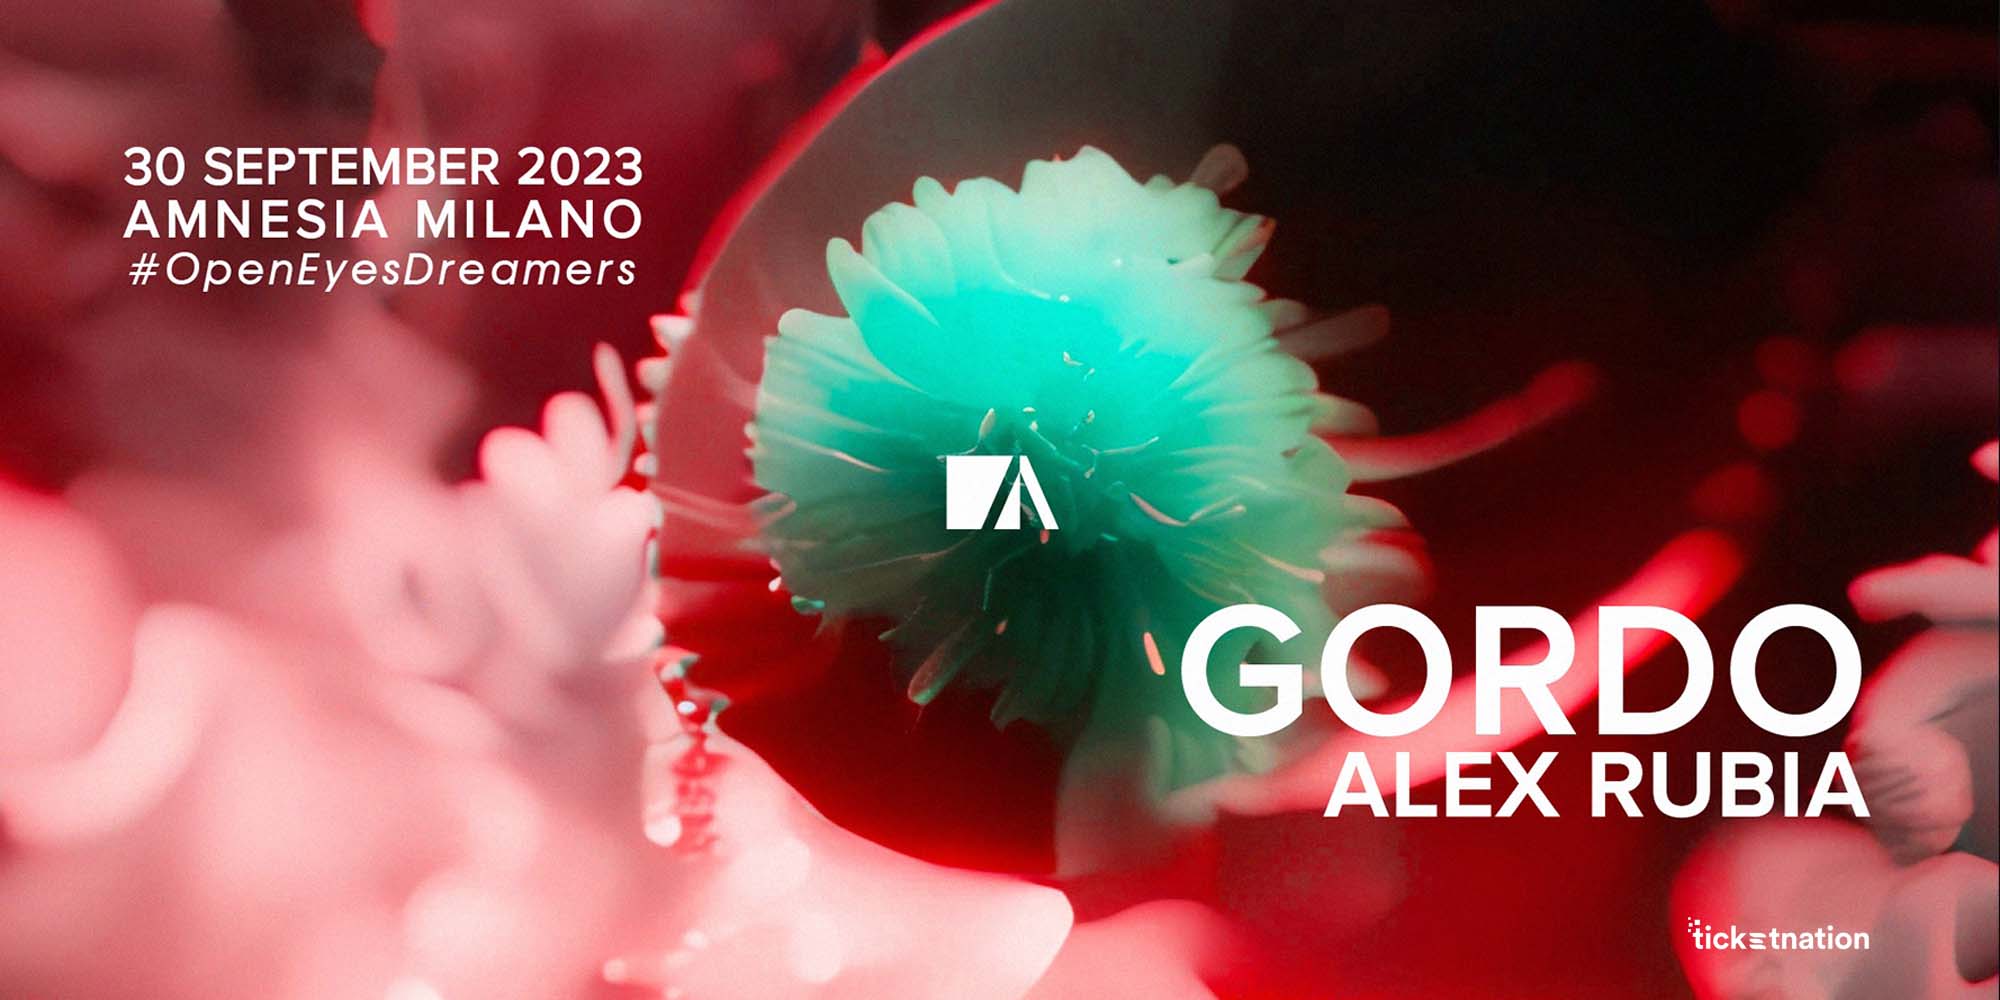 Gordo-Amnesia Milano-30-09-23